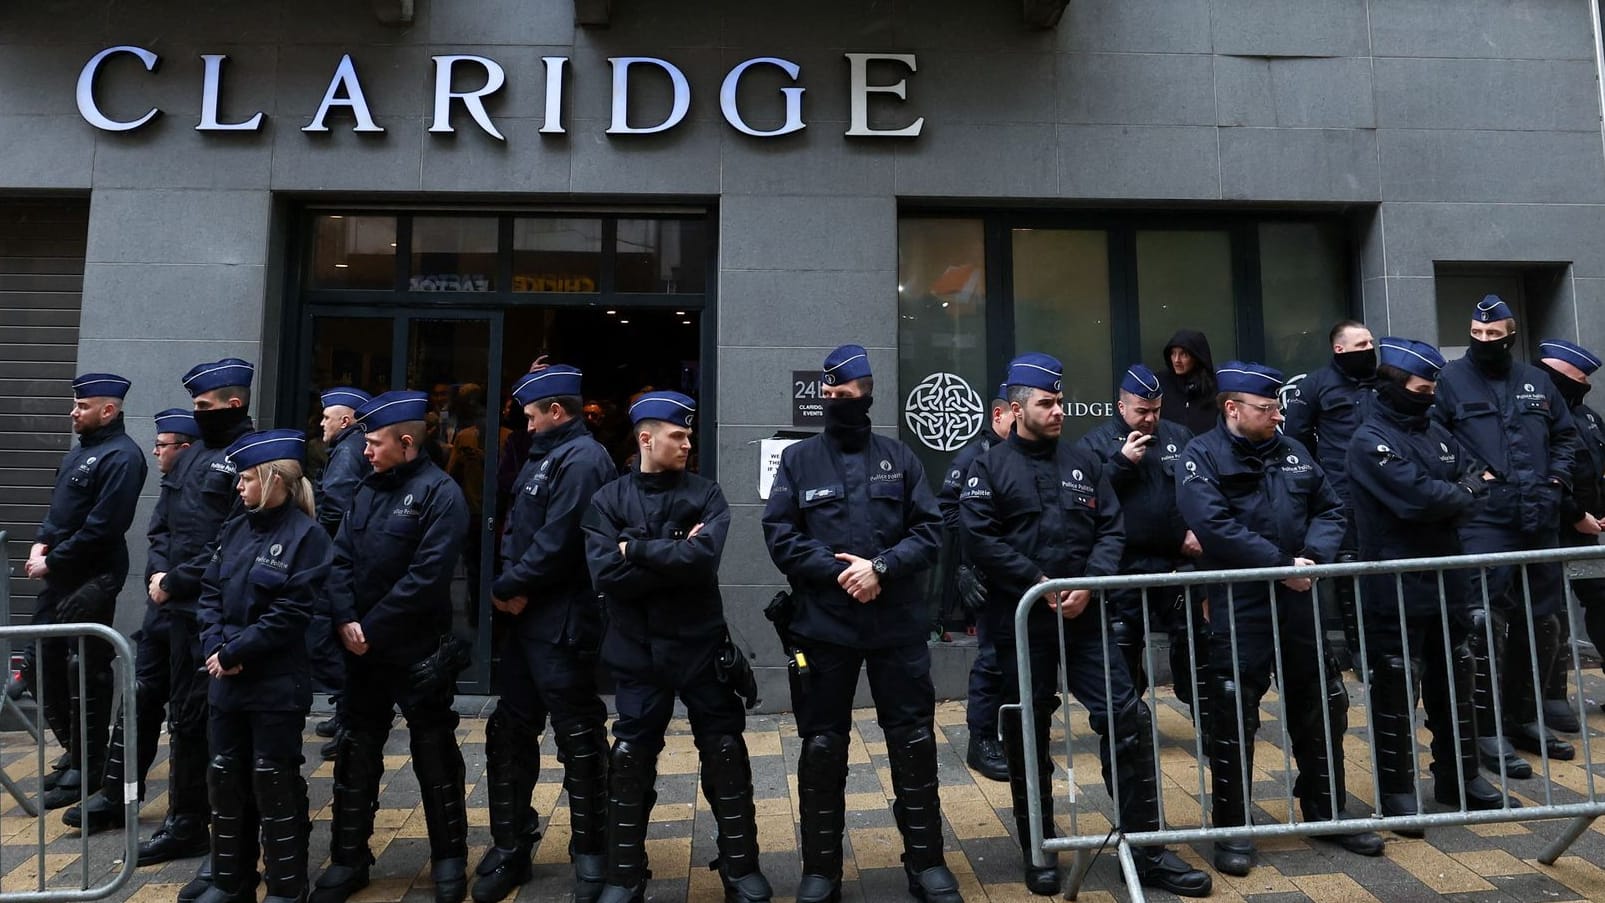 Brüssel: Polizei blockiert Konferenz von Rechten - auch Maaßen erwartet